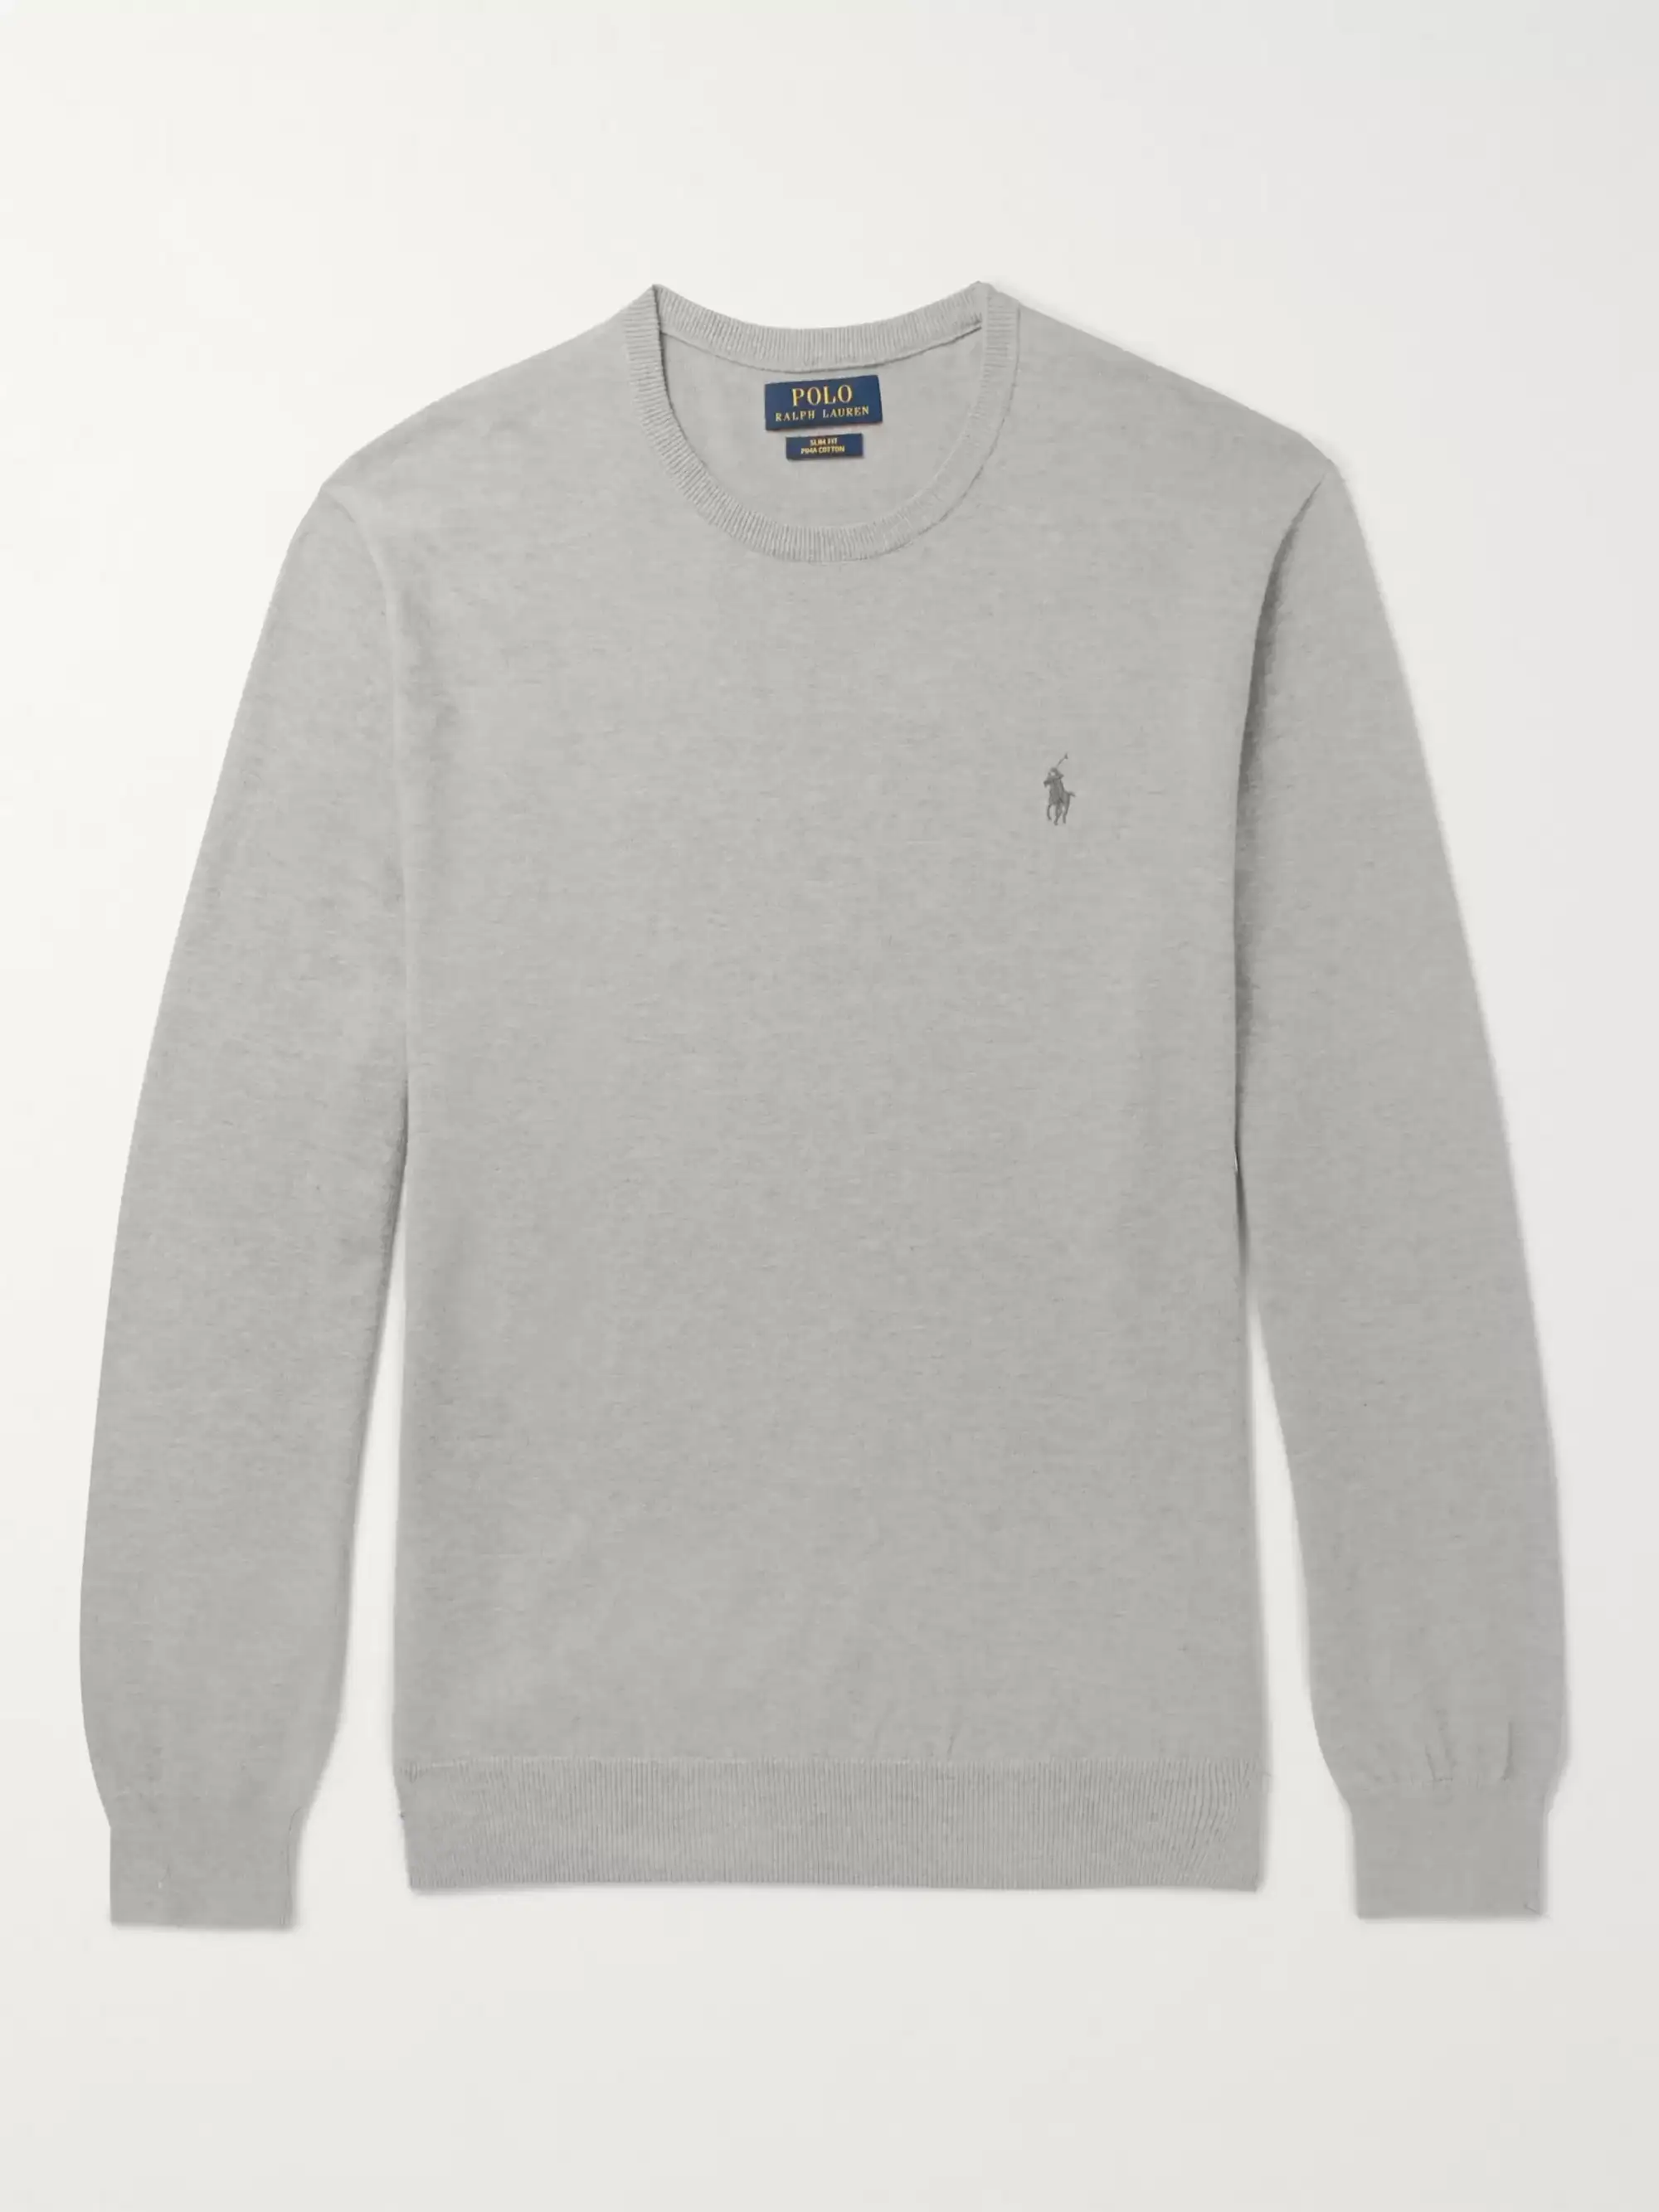 Ralph Lauren crewneck sweater